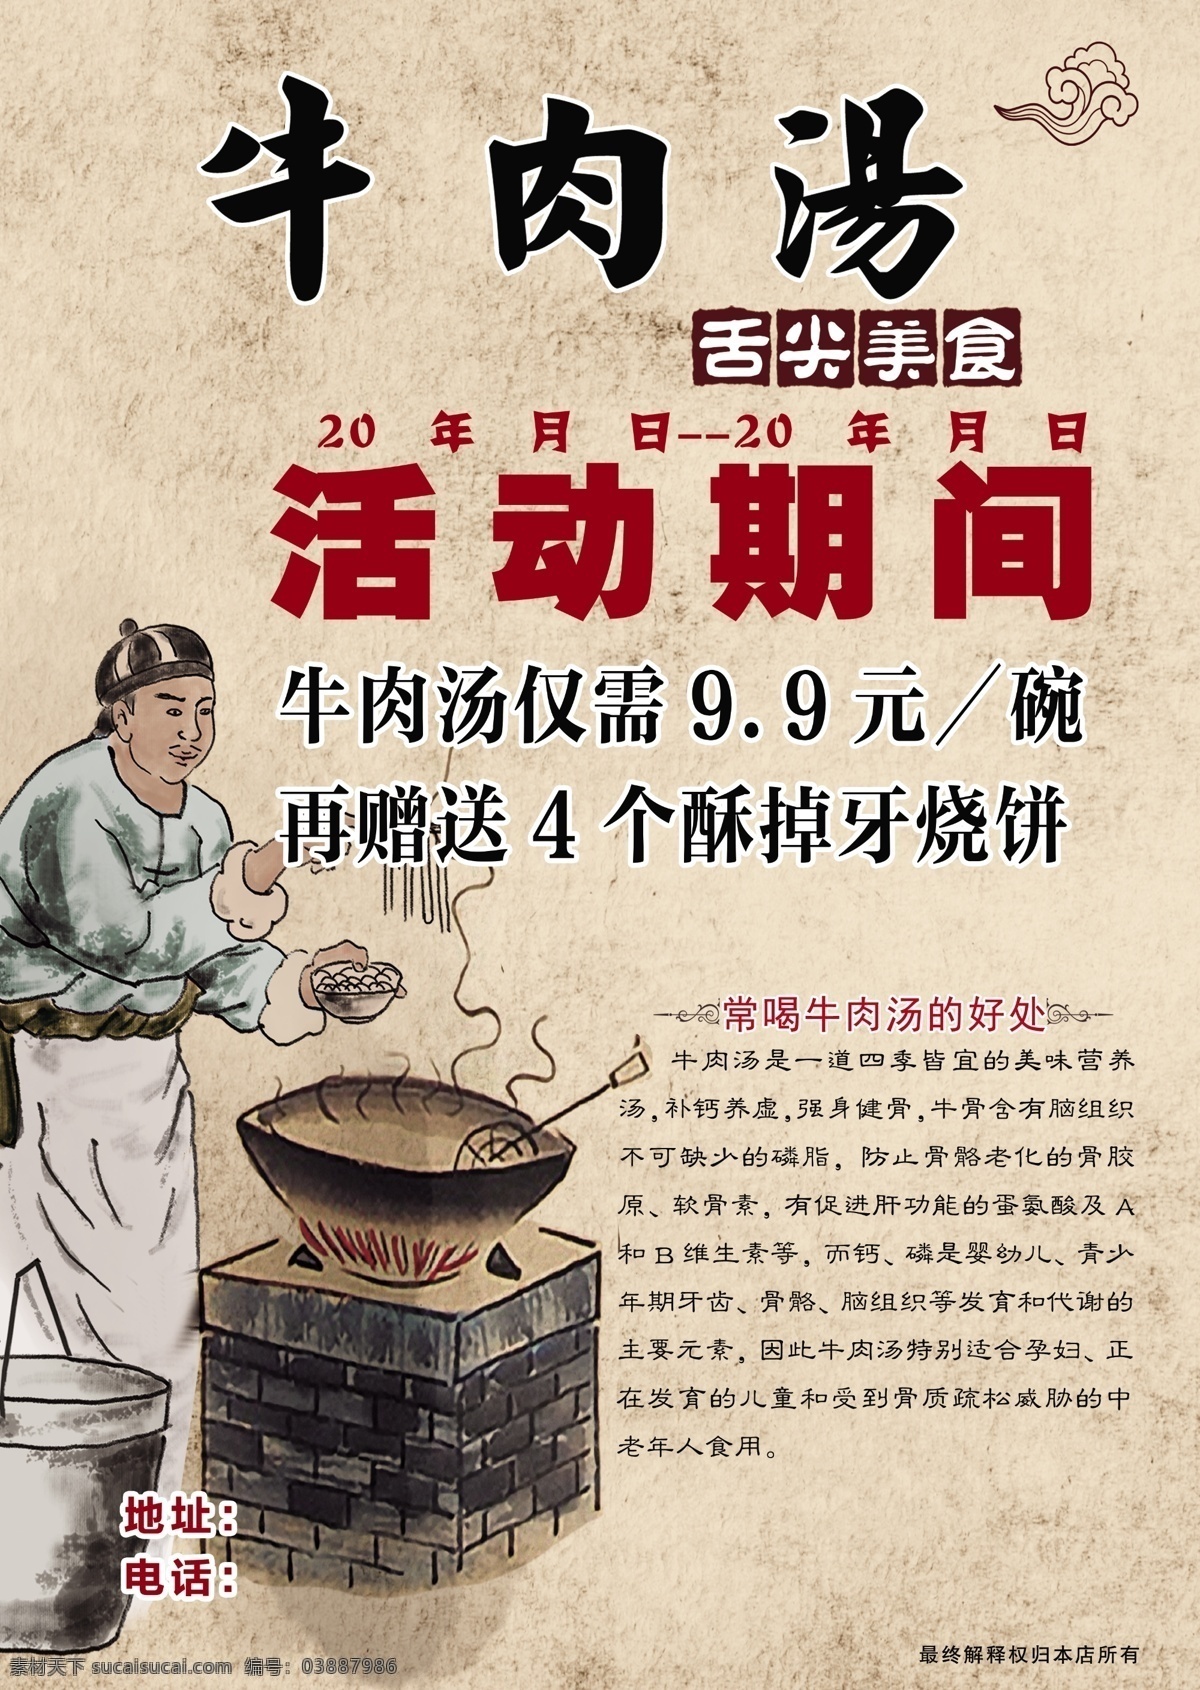 中国节 黄色底纹 花边 边框 牛肉扬图片 牛肉汤的好处 牛肉汤的价值 牛肉汤碗 古人 吃饭 海报 宣传